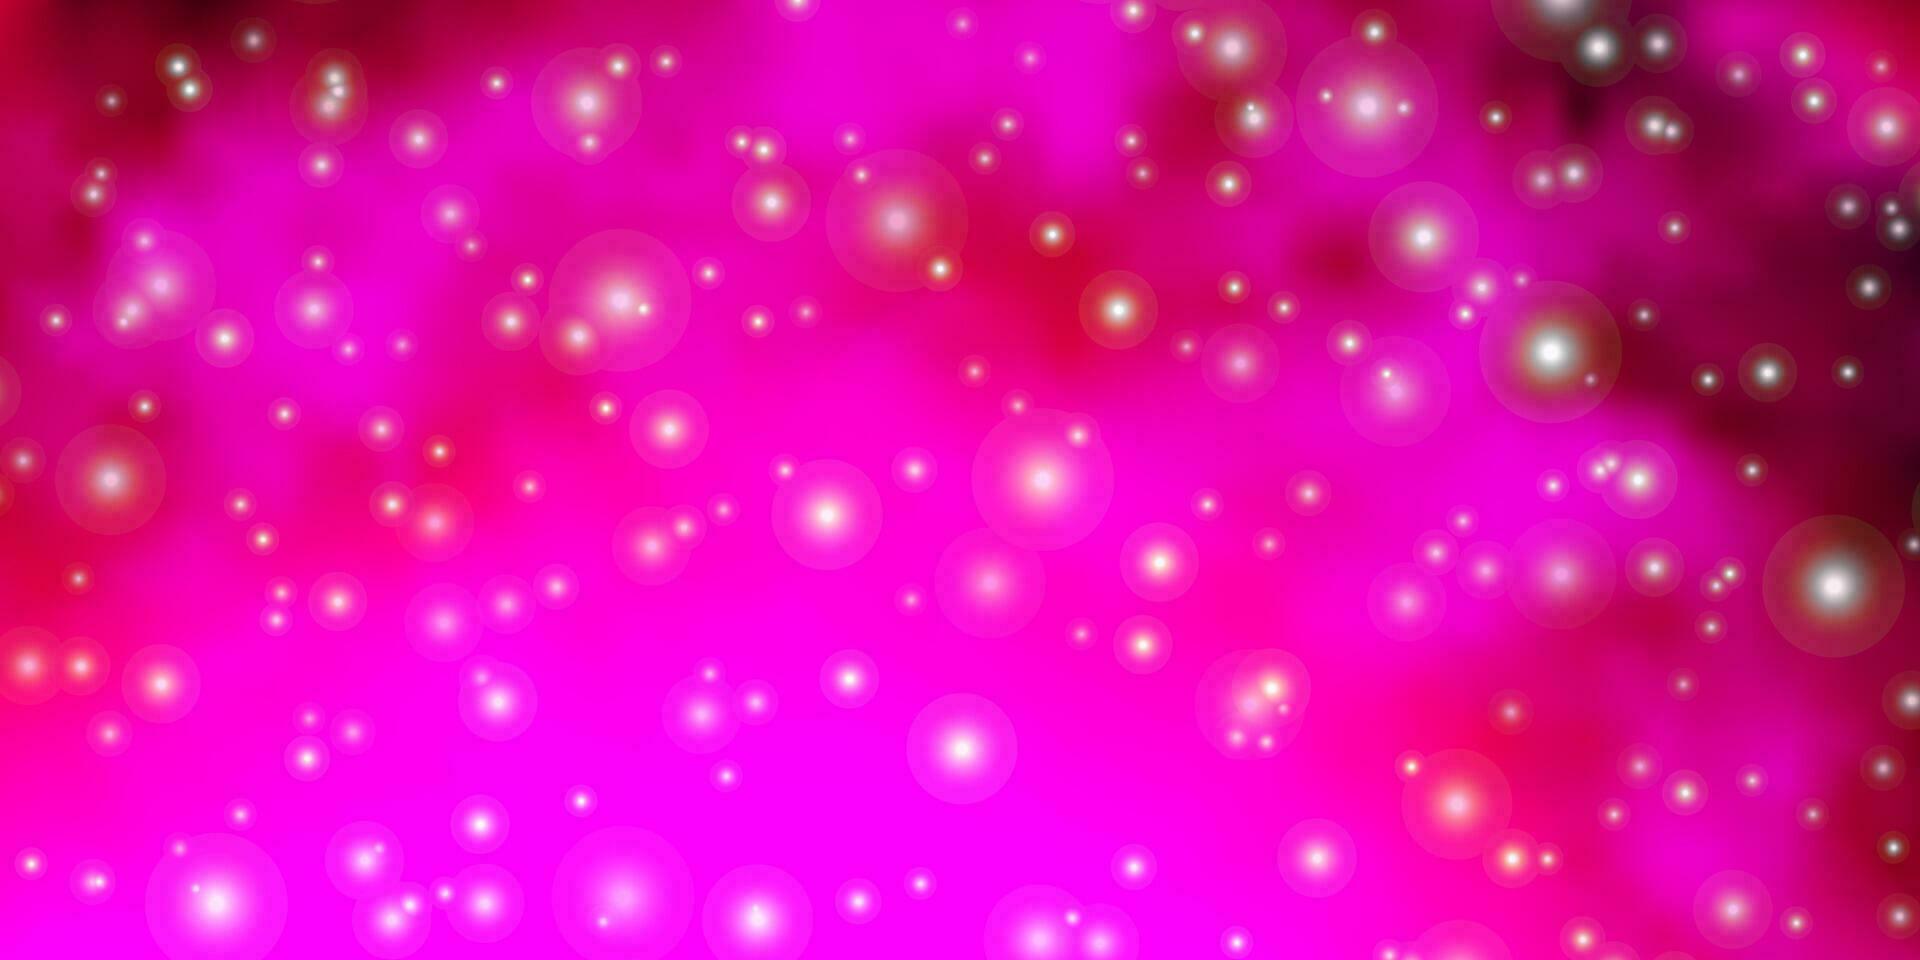 modello vettoriale rosa chiaro con stelle al neon.